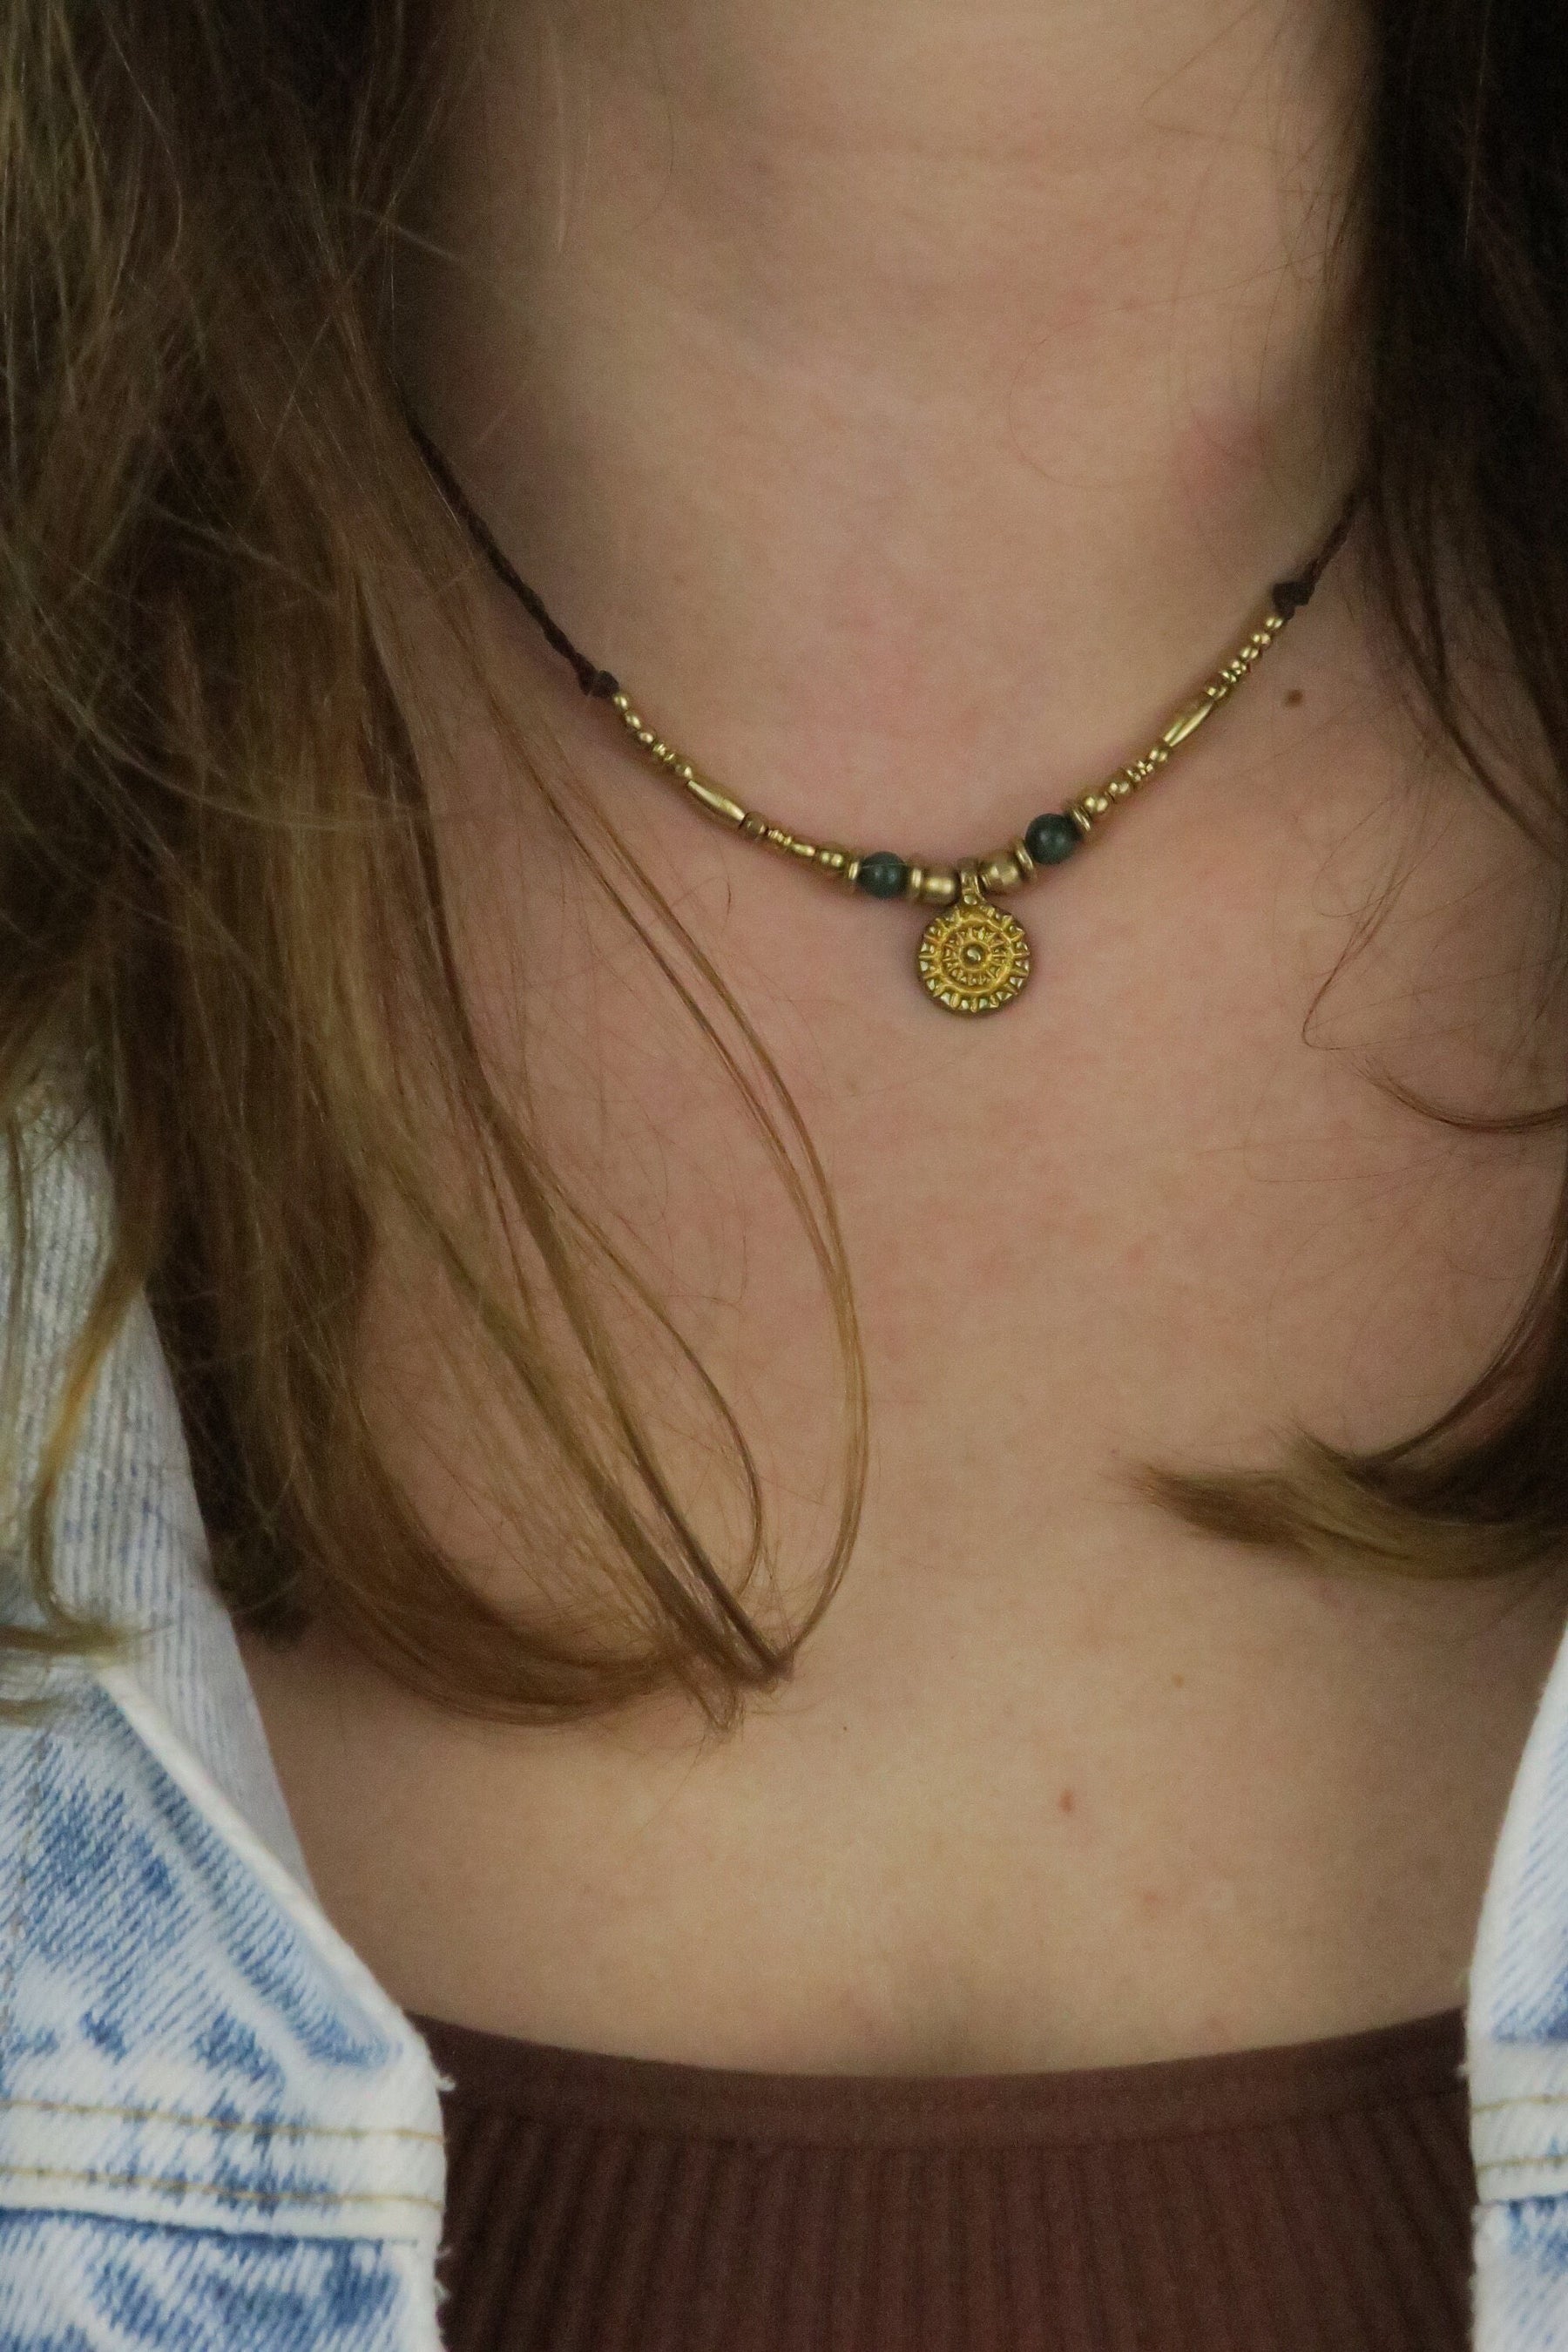 dünne choker Halskette mit goldenen messinganteilen und grünen achatperlen sowie dunkel braunem nylongarn